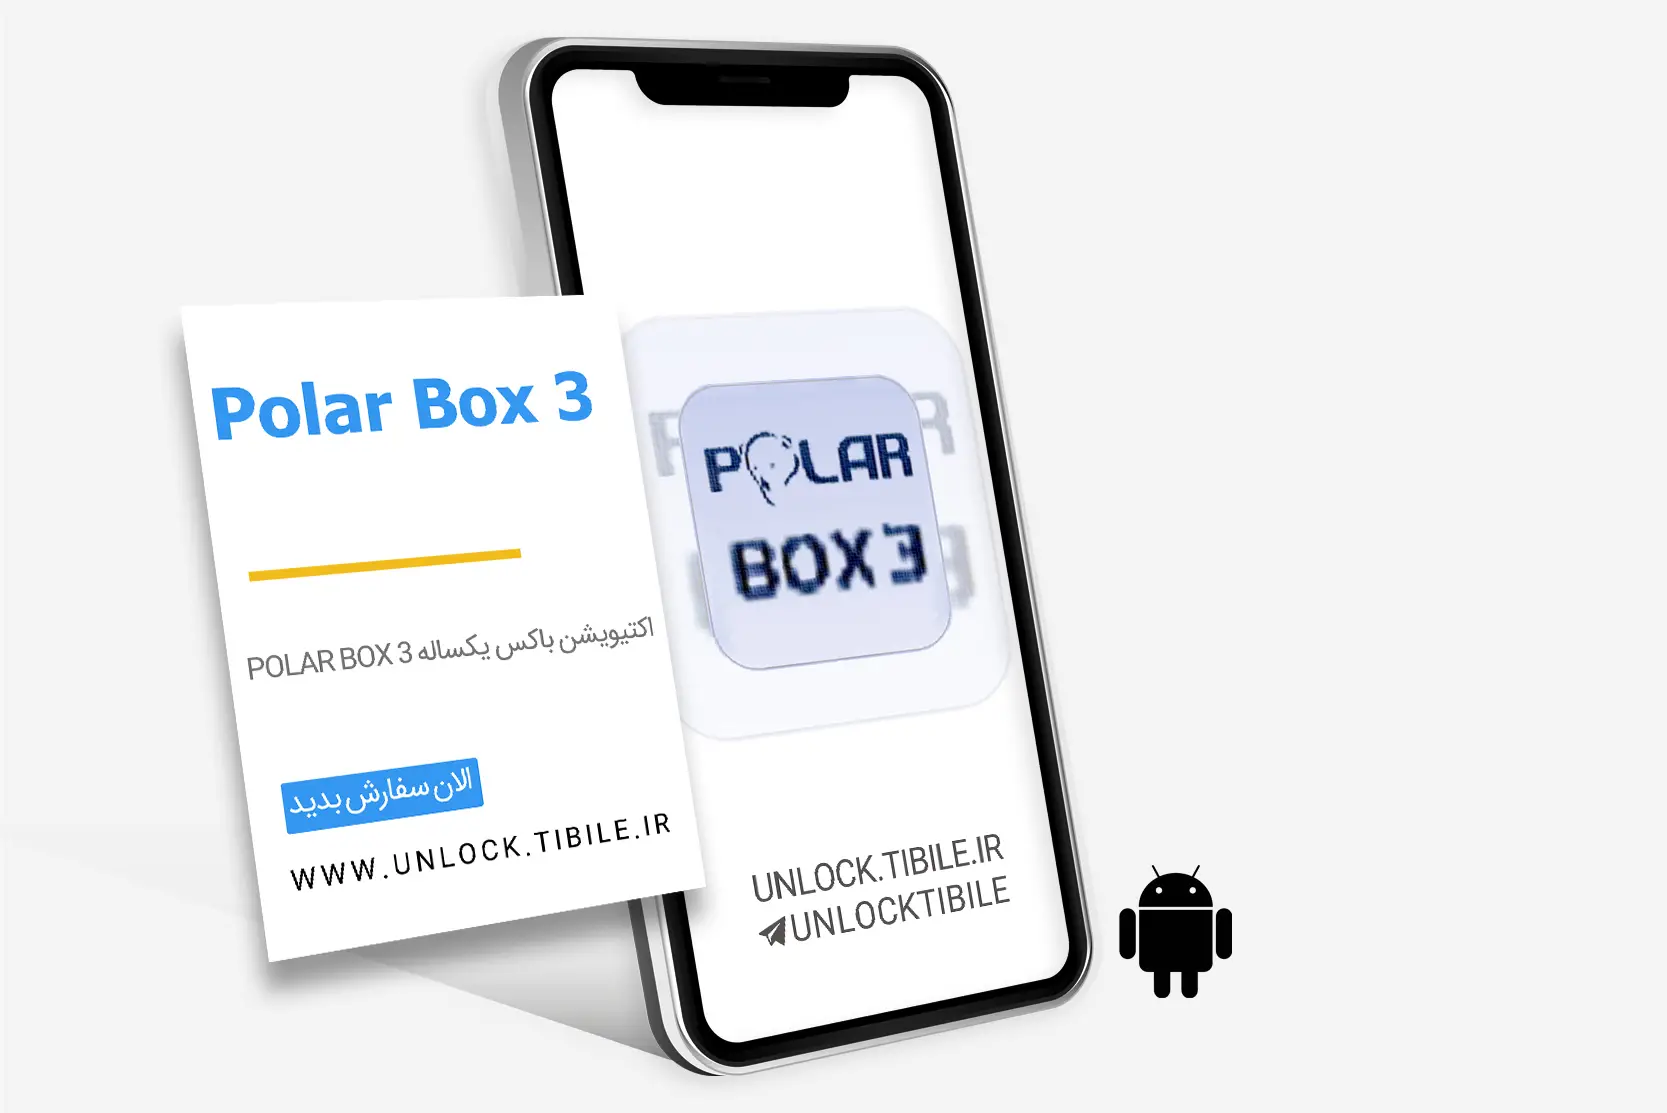 Polar Box 3